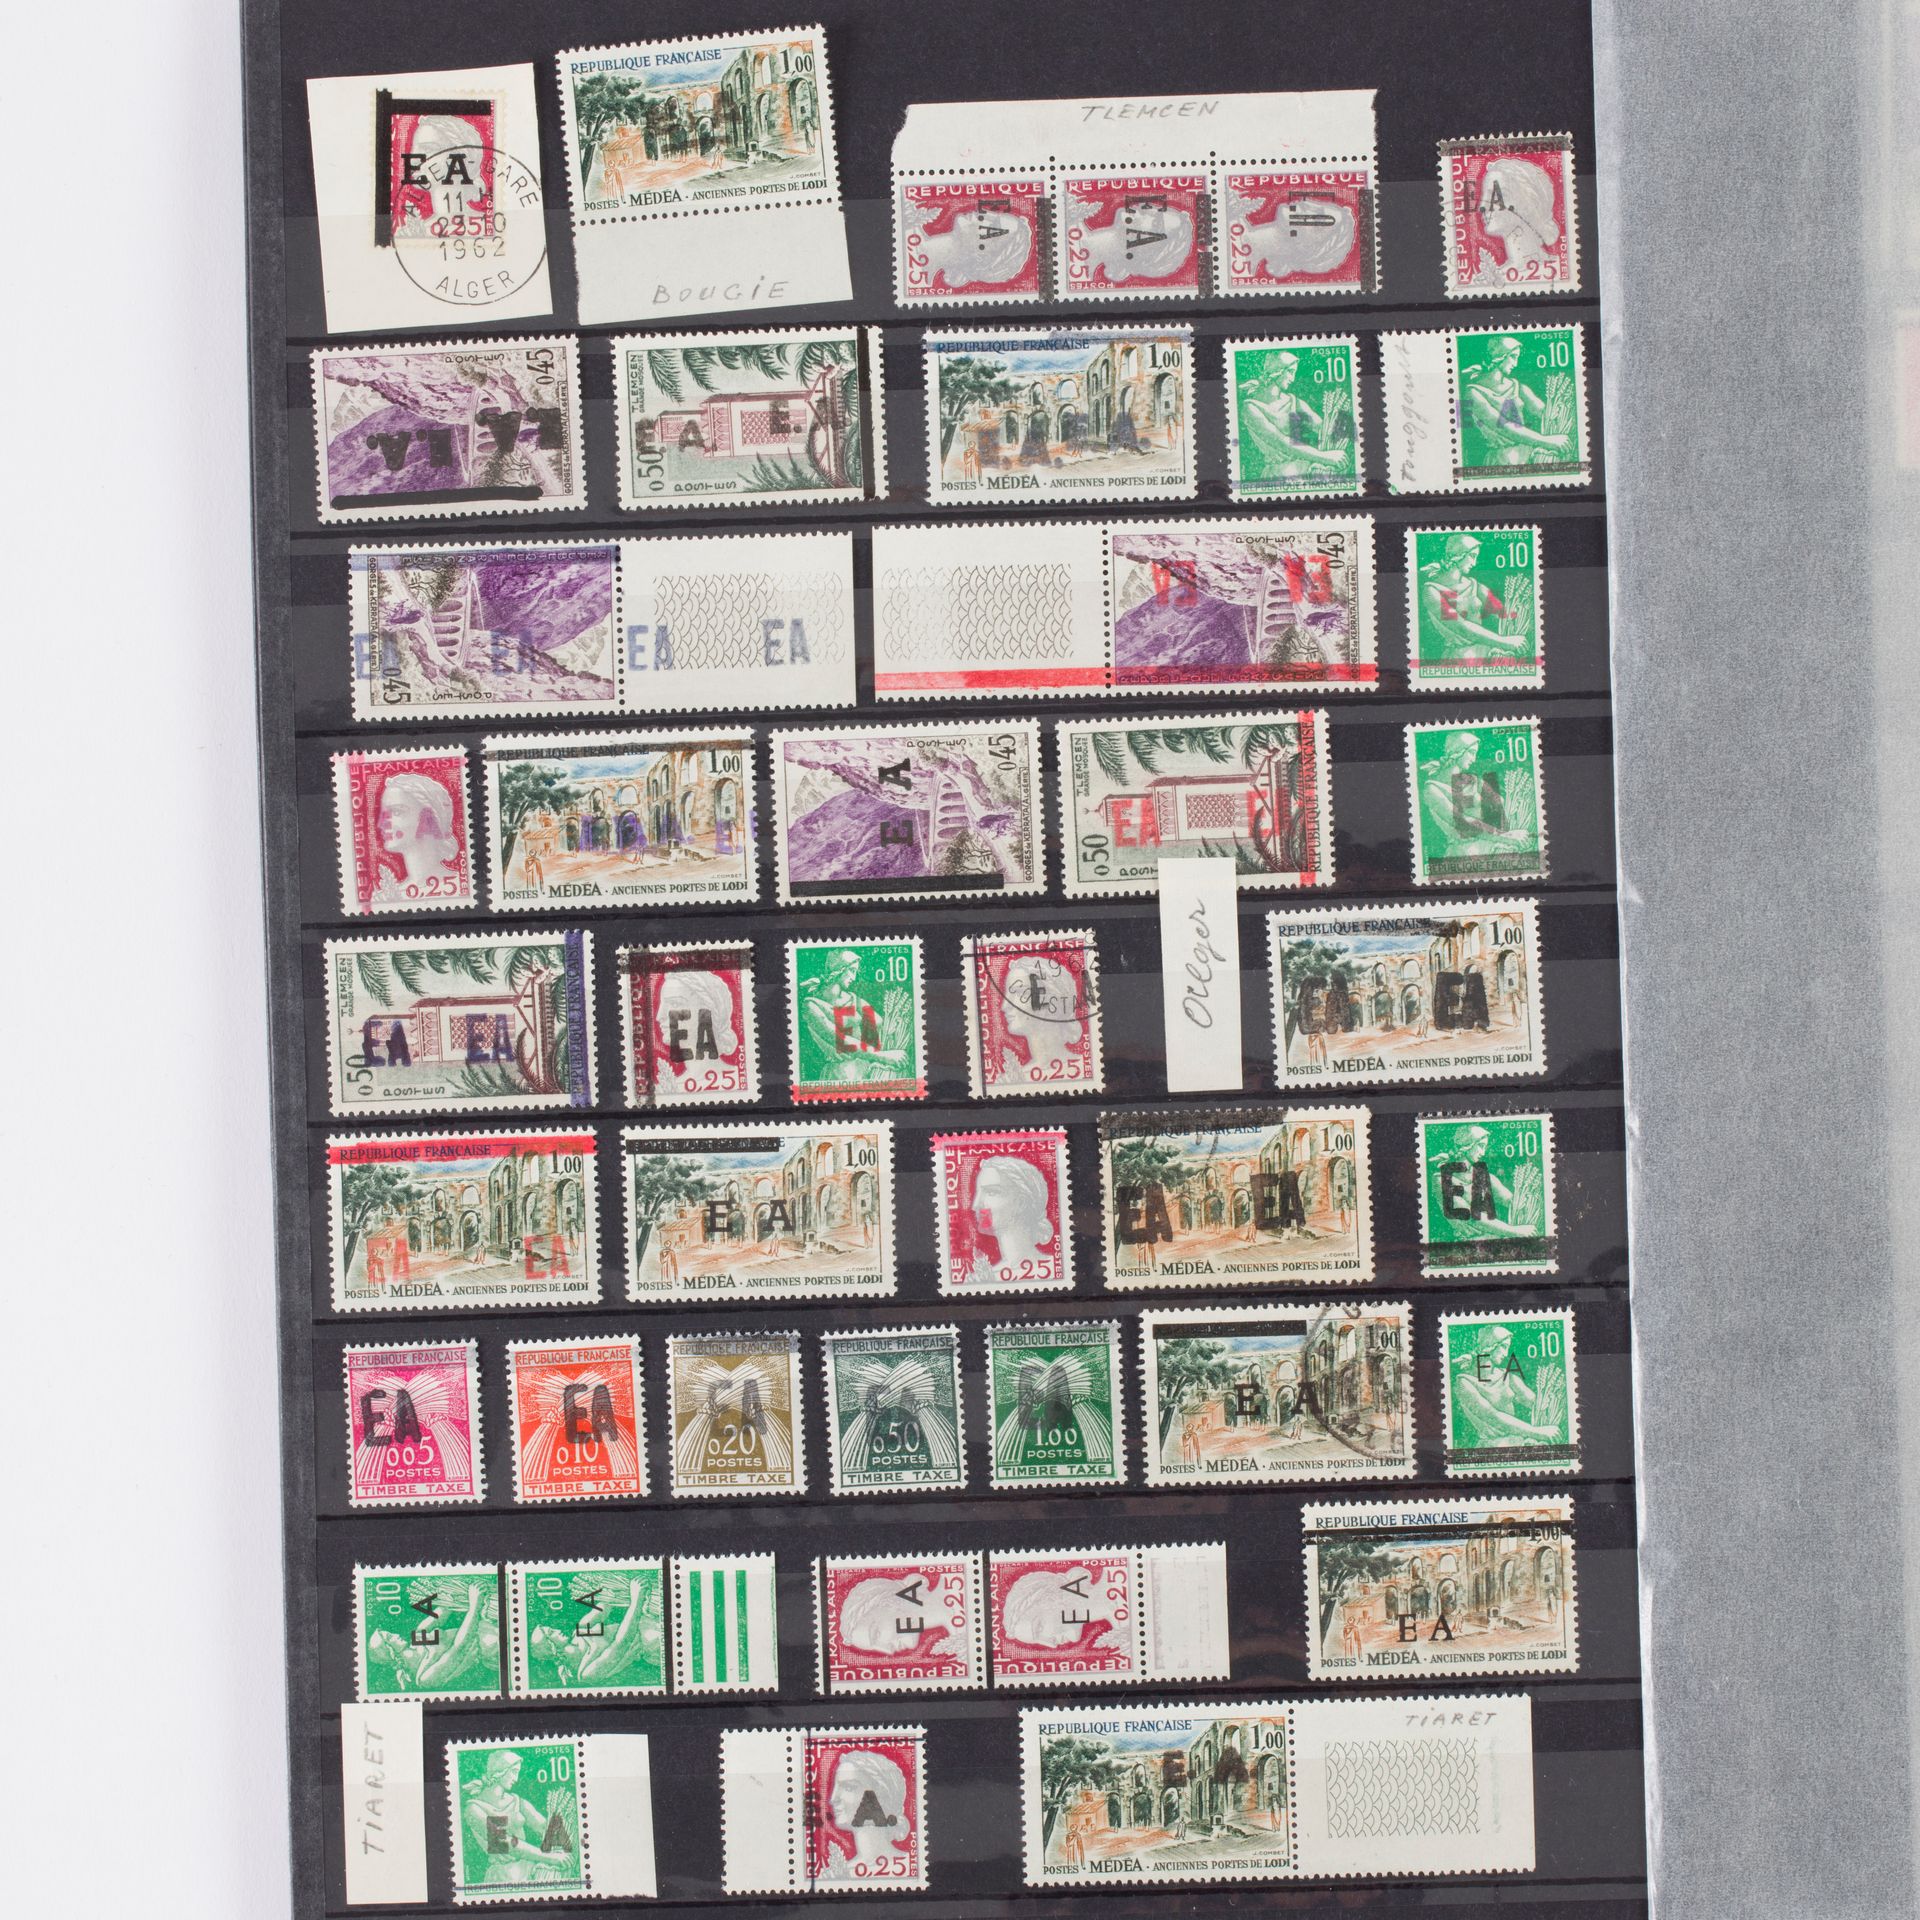 Null [阿尔及利亚]
一套非常好的170多枚邮票，主要是薄荷邮票（5封信上有8份），阿尔及利亚战争时期印有 "E.A. "字样，按城市分类。一些品种和税票。&hellip;